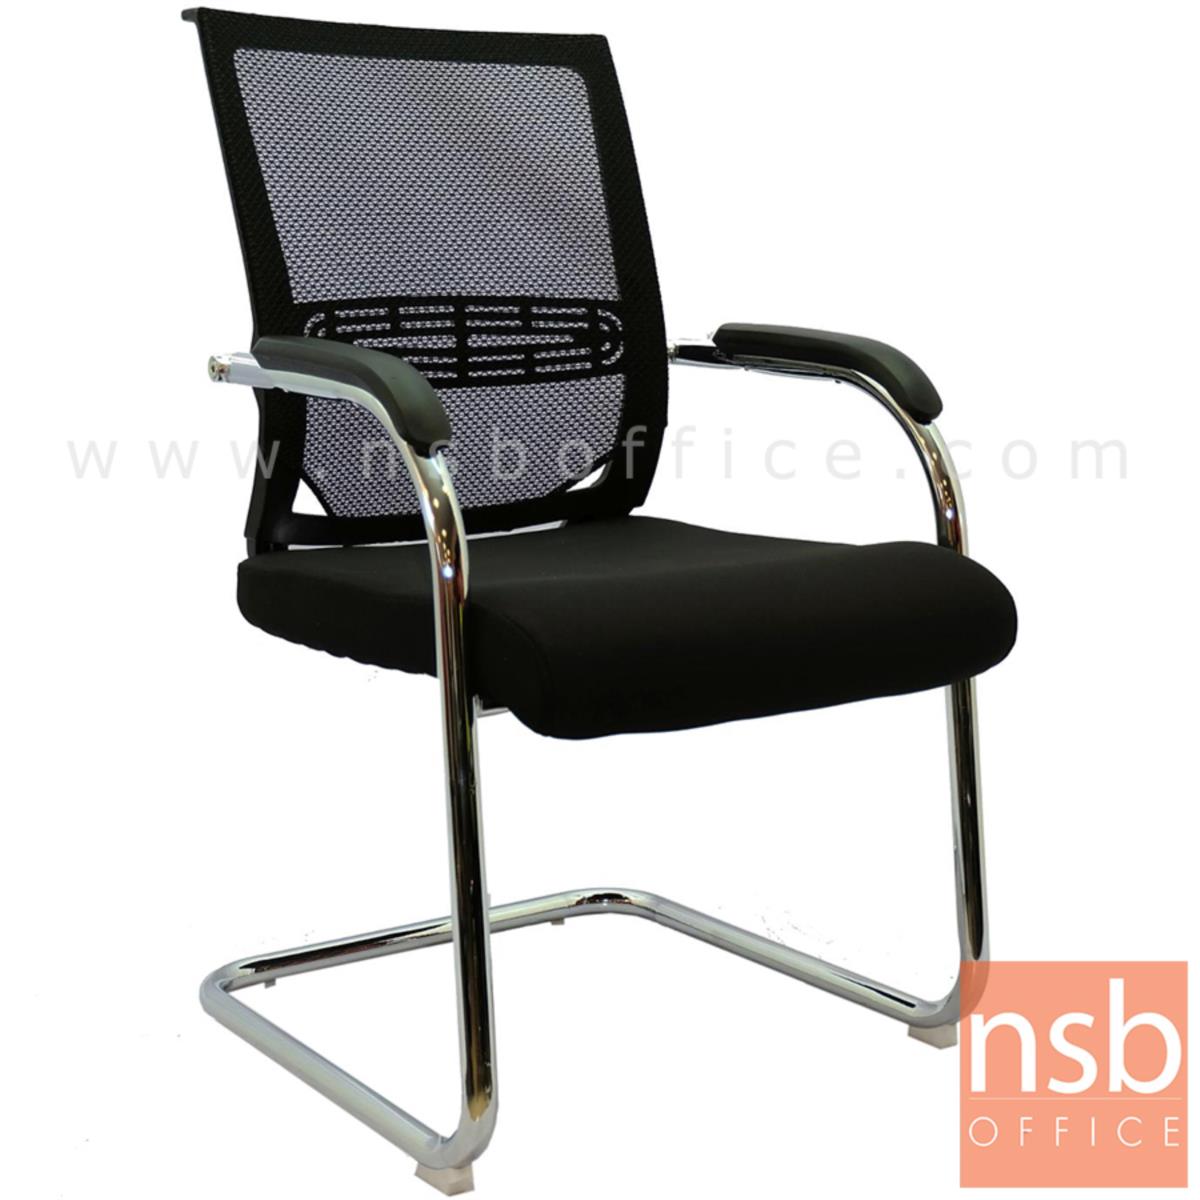 B05A139:เก้าอี้รับแขกขาตัวซีหลังเน็ต รุ่น Irving (เออร์วิง)  ขาเหล็กชุบโครเมี่ยม